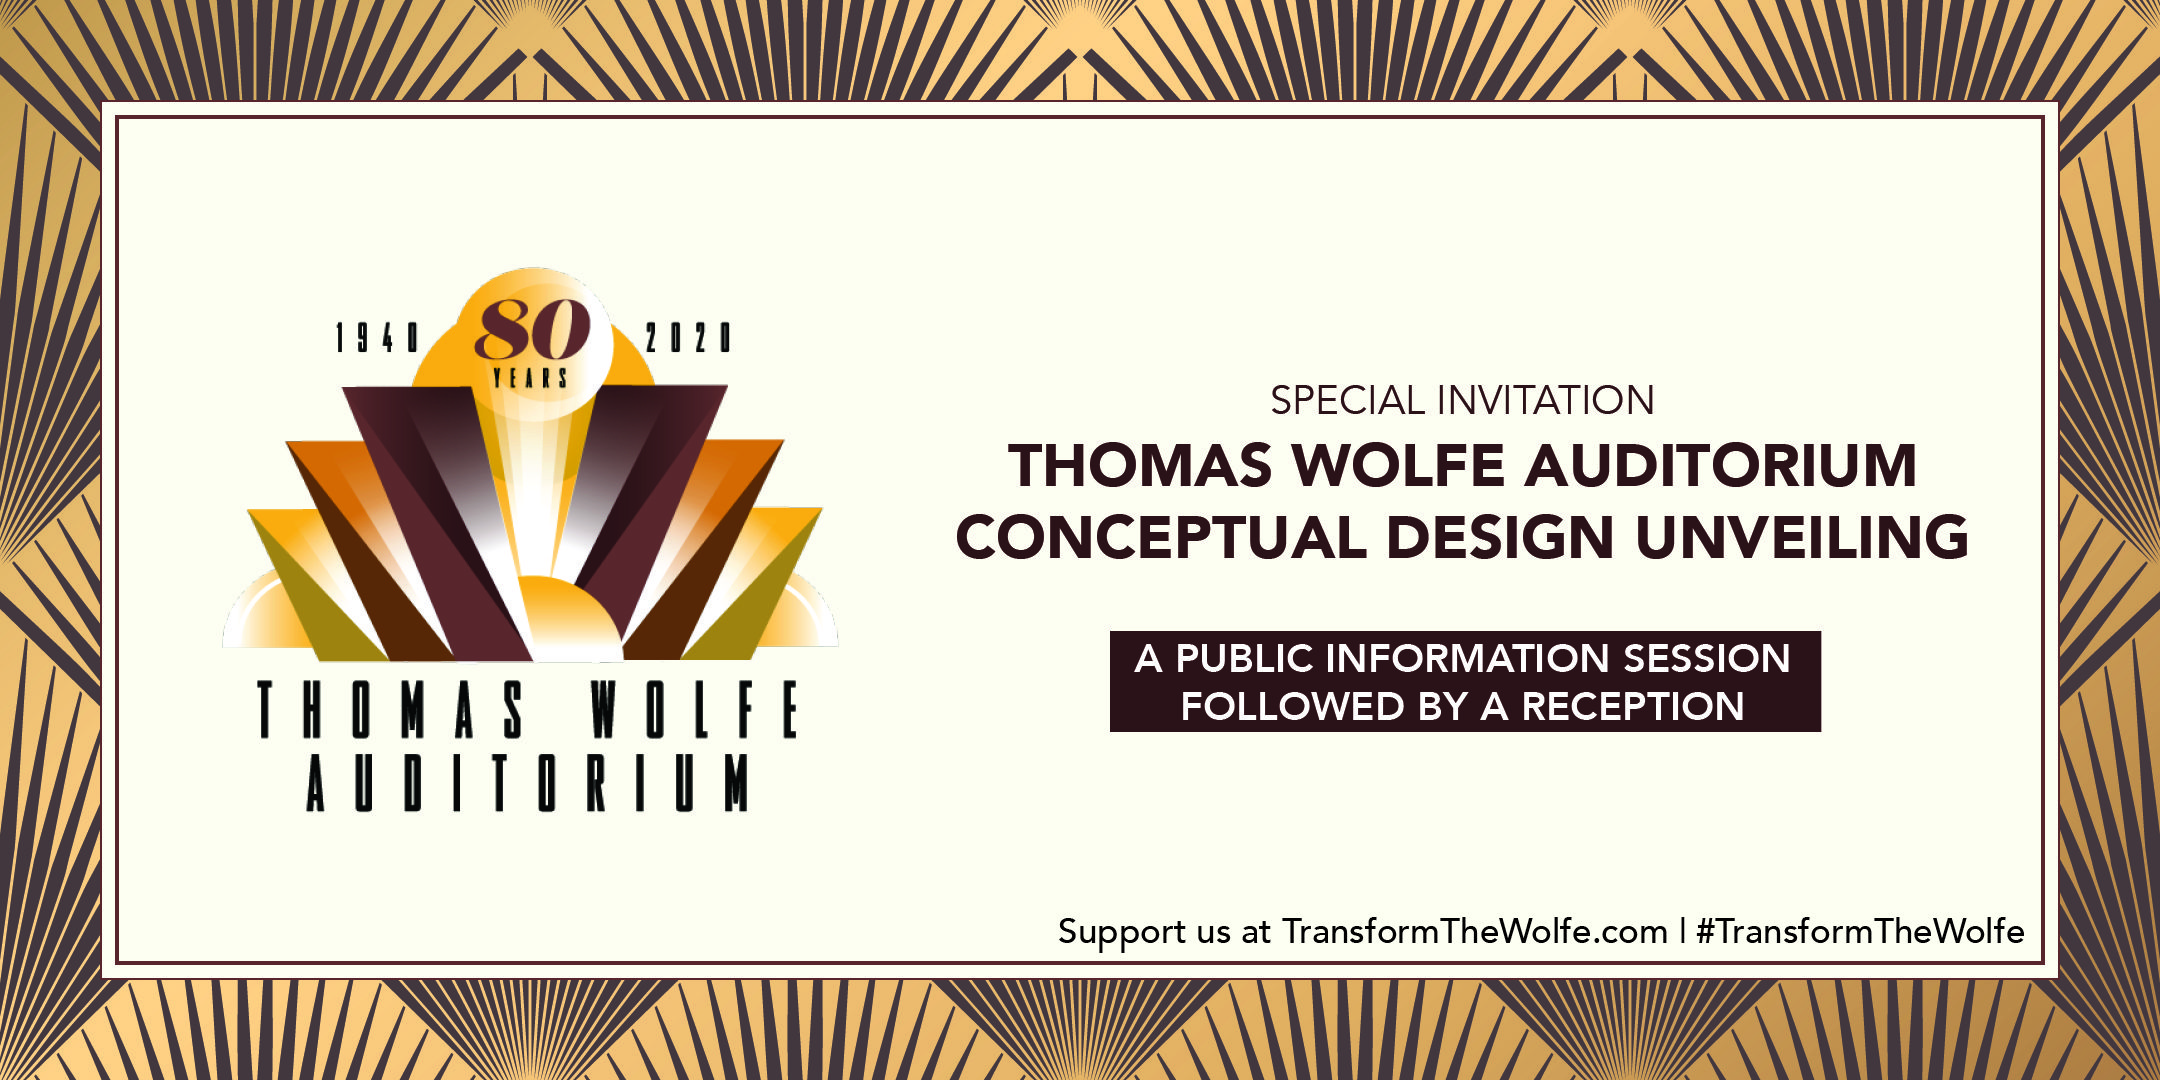 Thomas Wolfe Auditorium Conceptual Design Unveiling